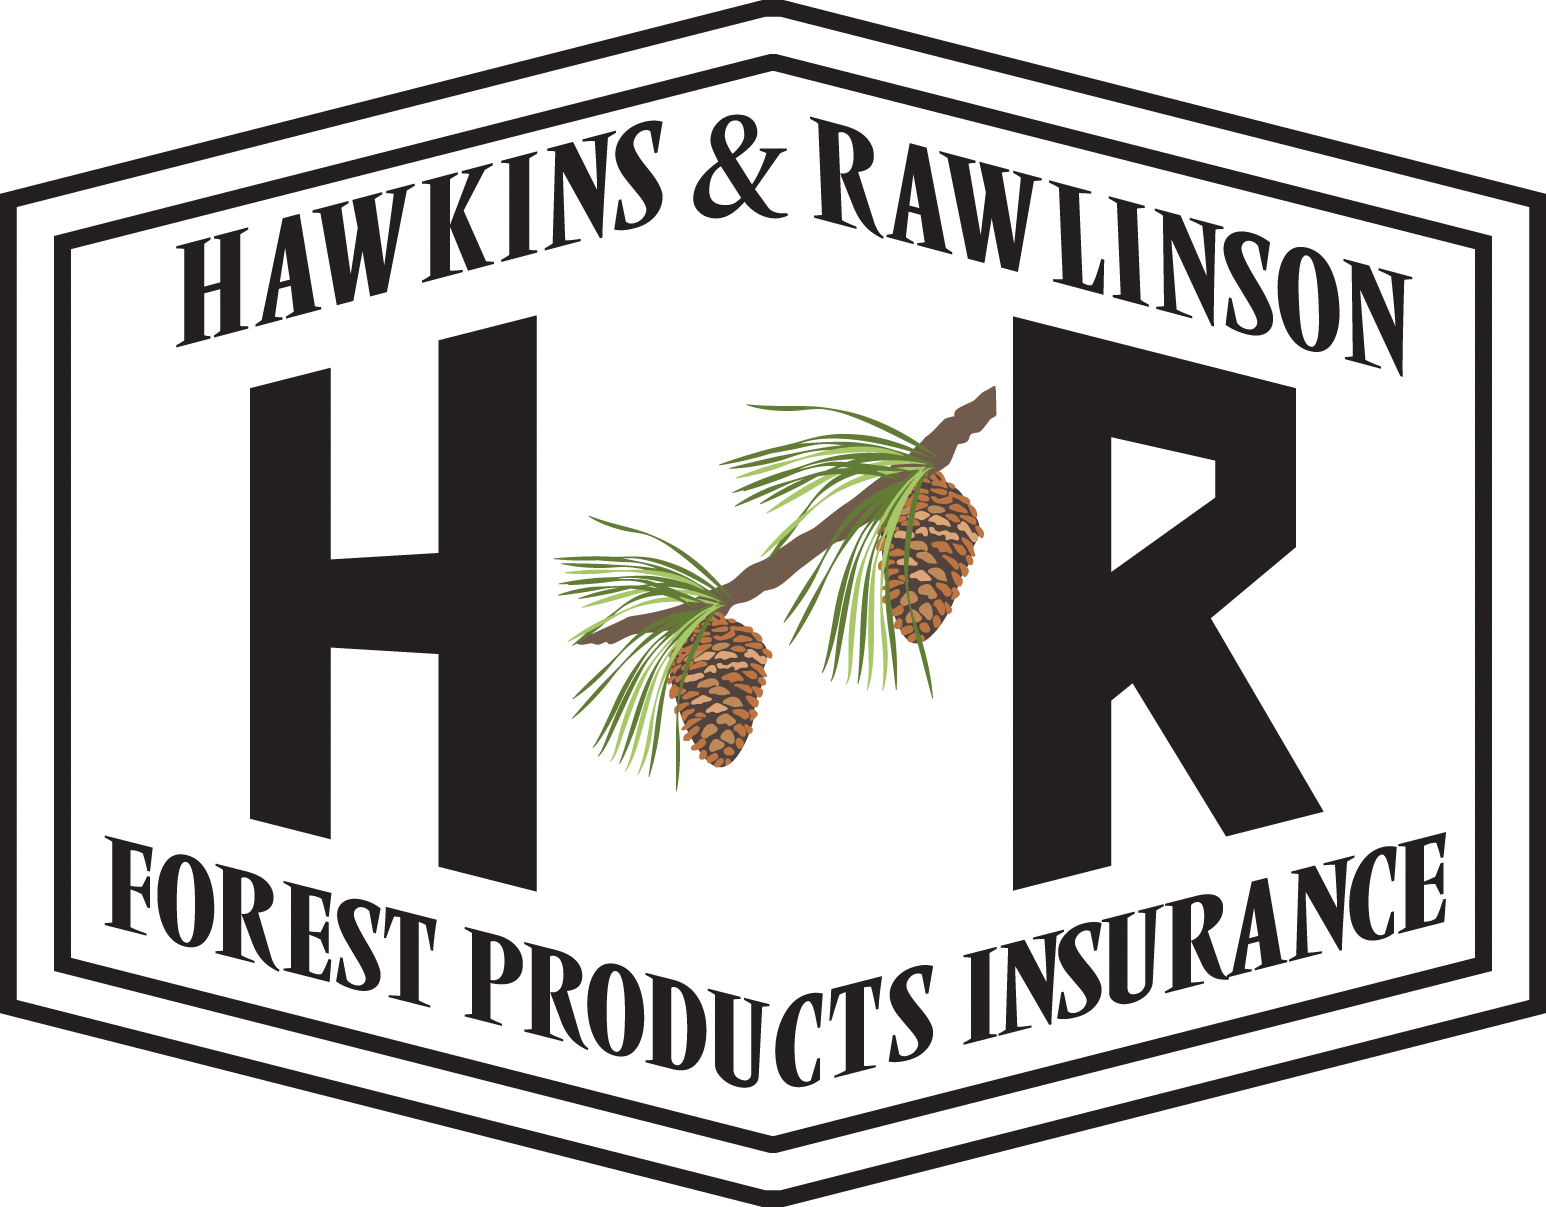 Hawkins & Rawlinson Logo